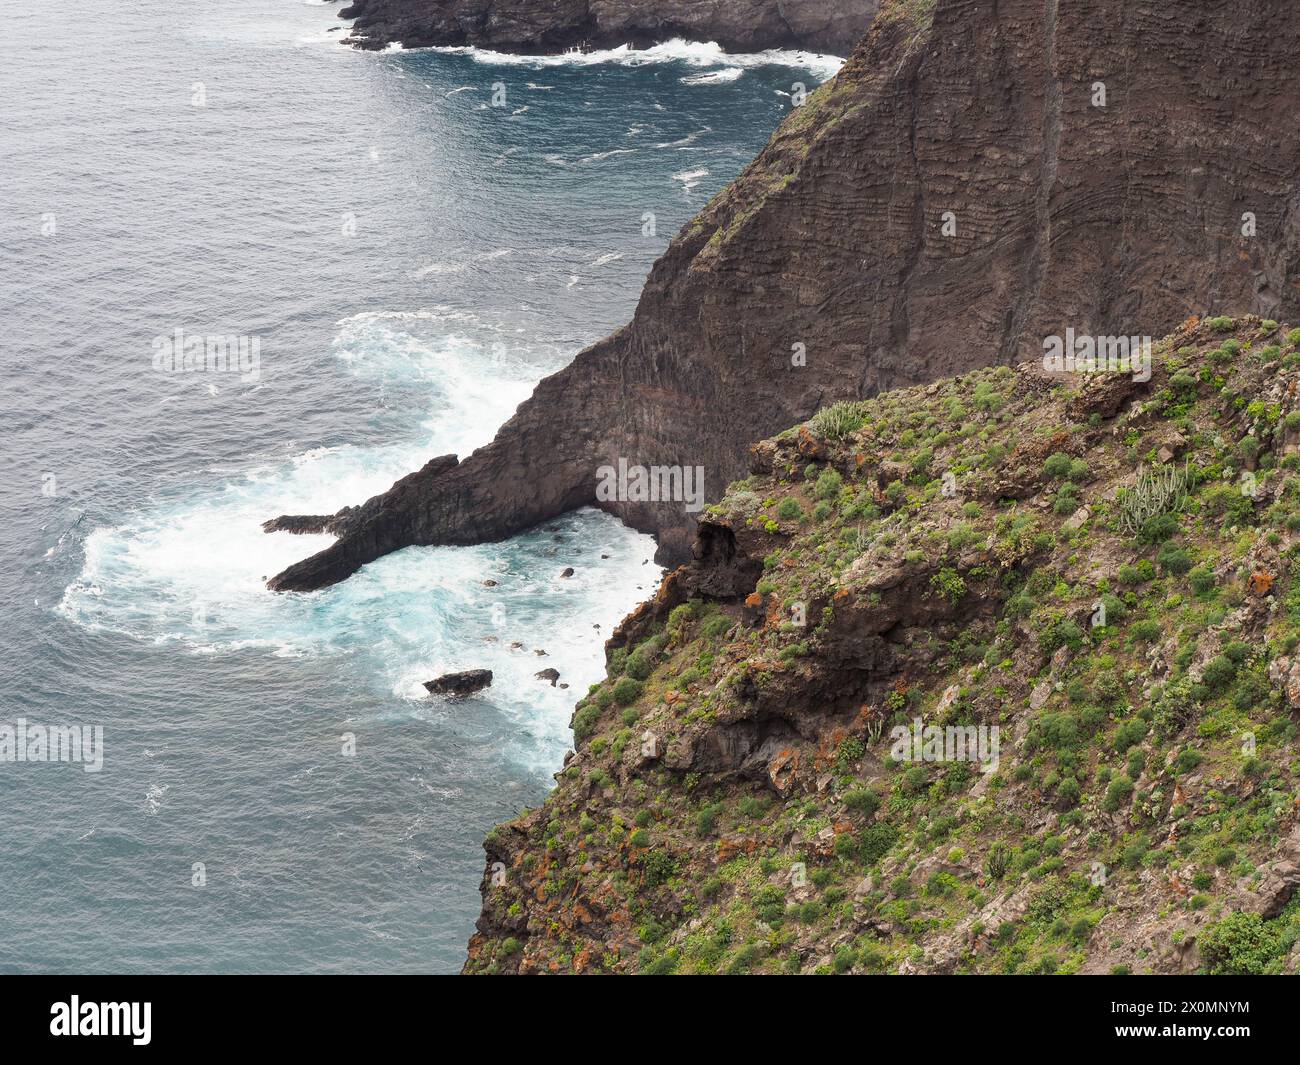 Tenerife, Espagne : Mirador Punta del Fraile, côte rocheuse de l'océan Atlantique. Banque D'Images